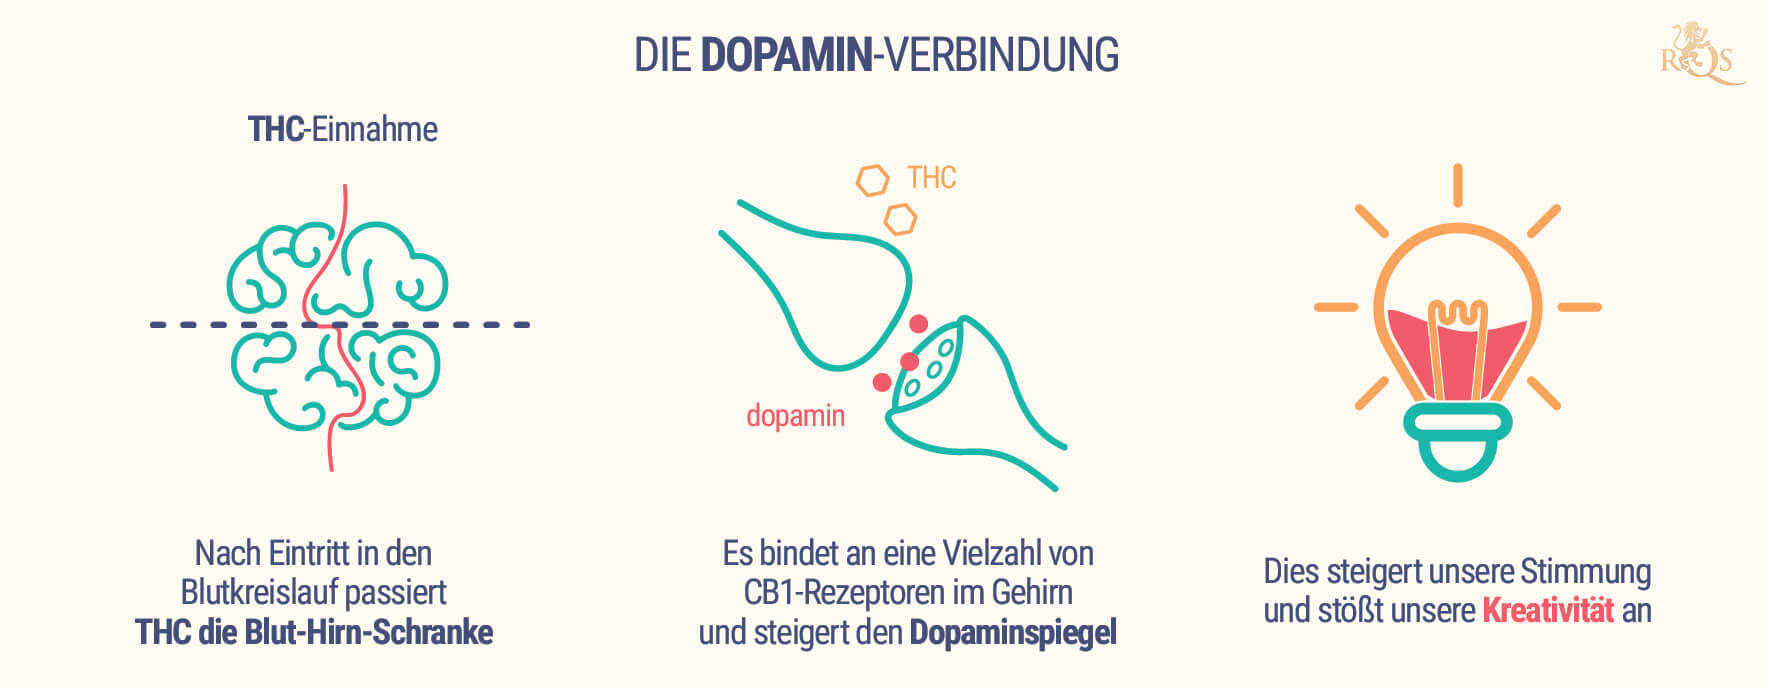 Die Dopamin-Verbindung